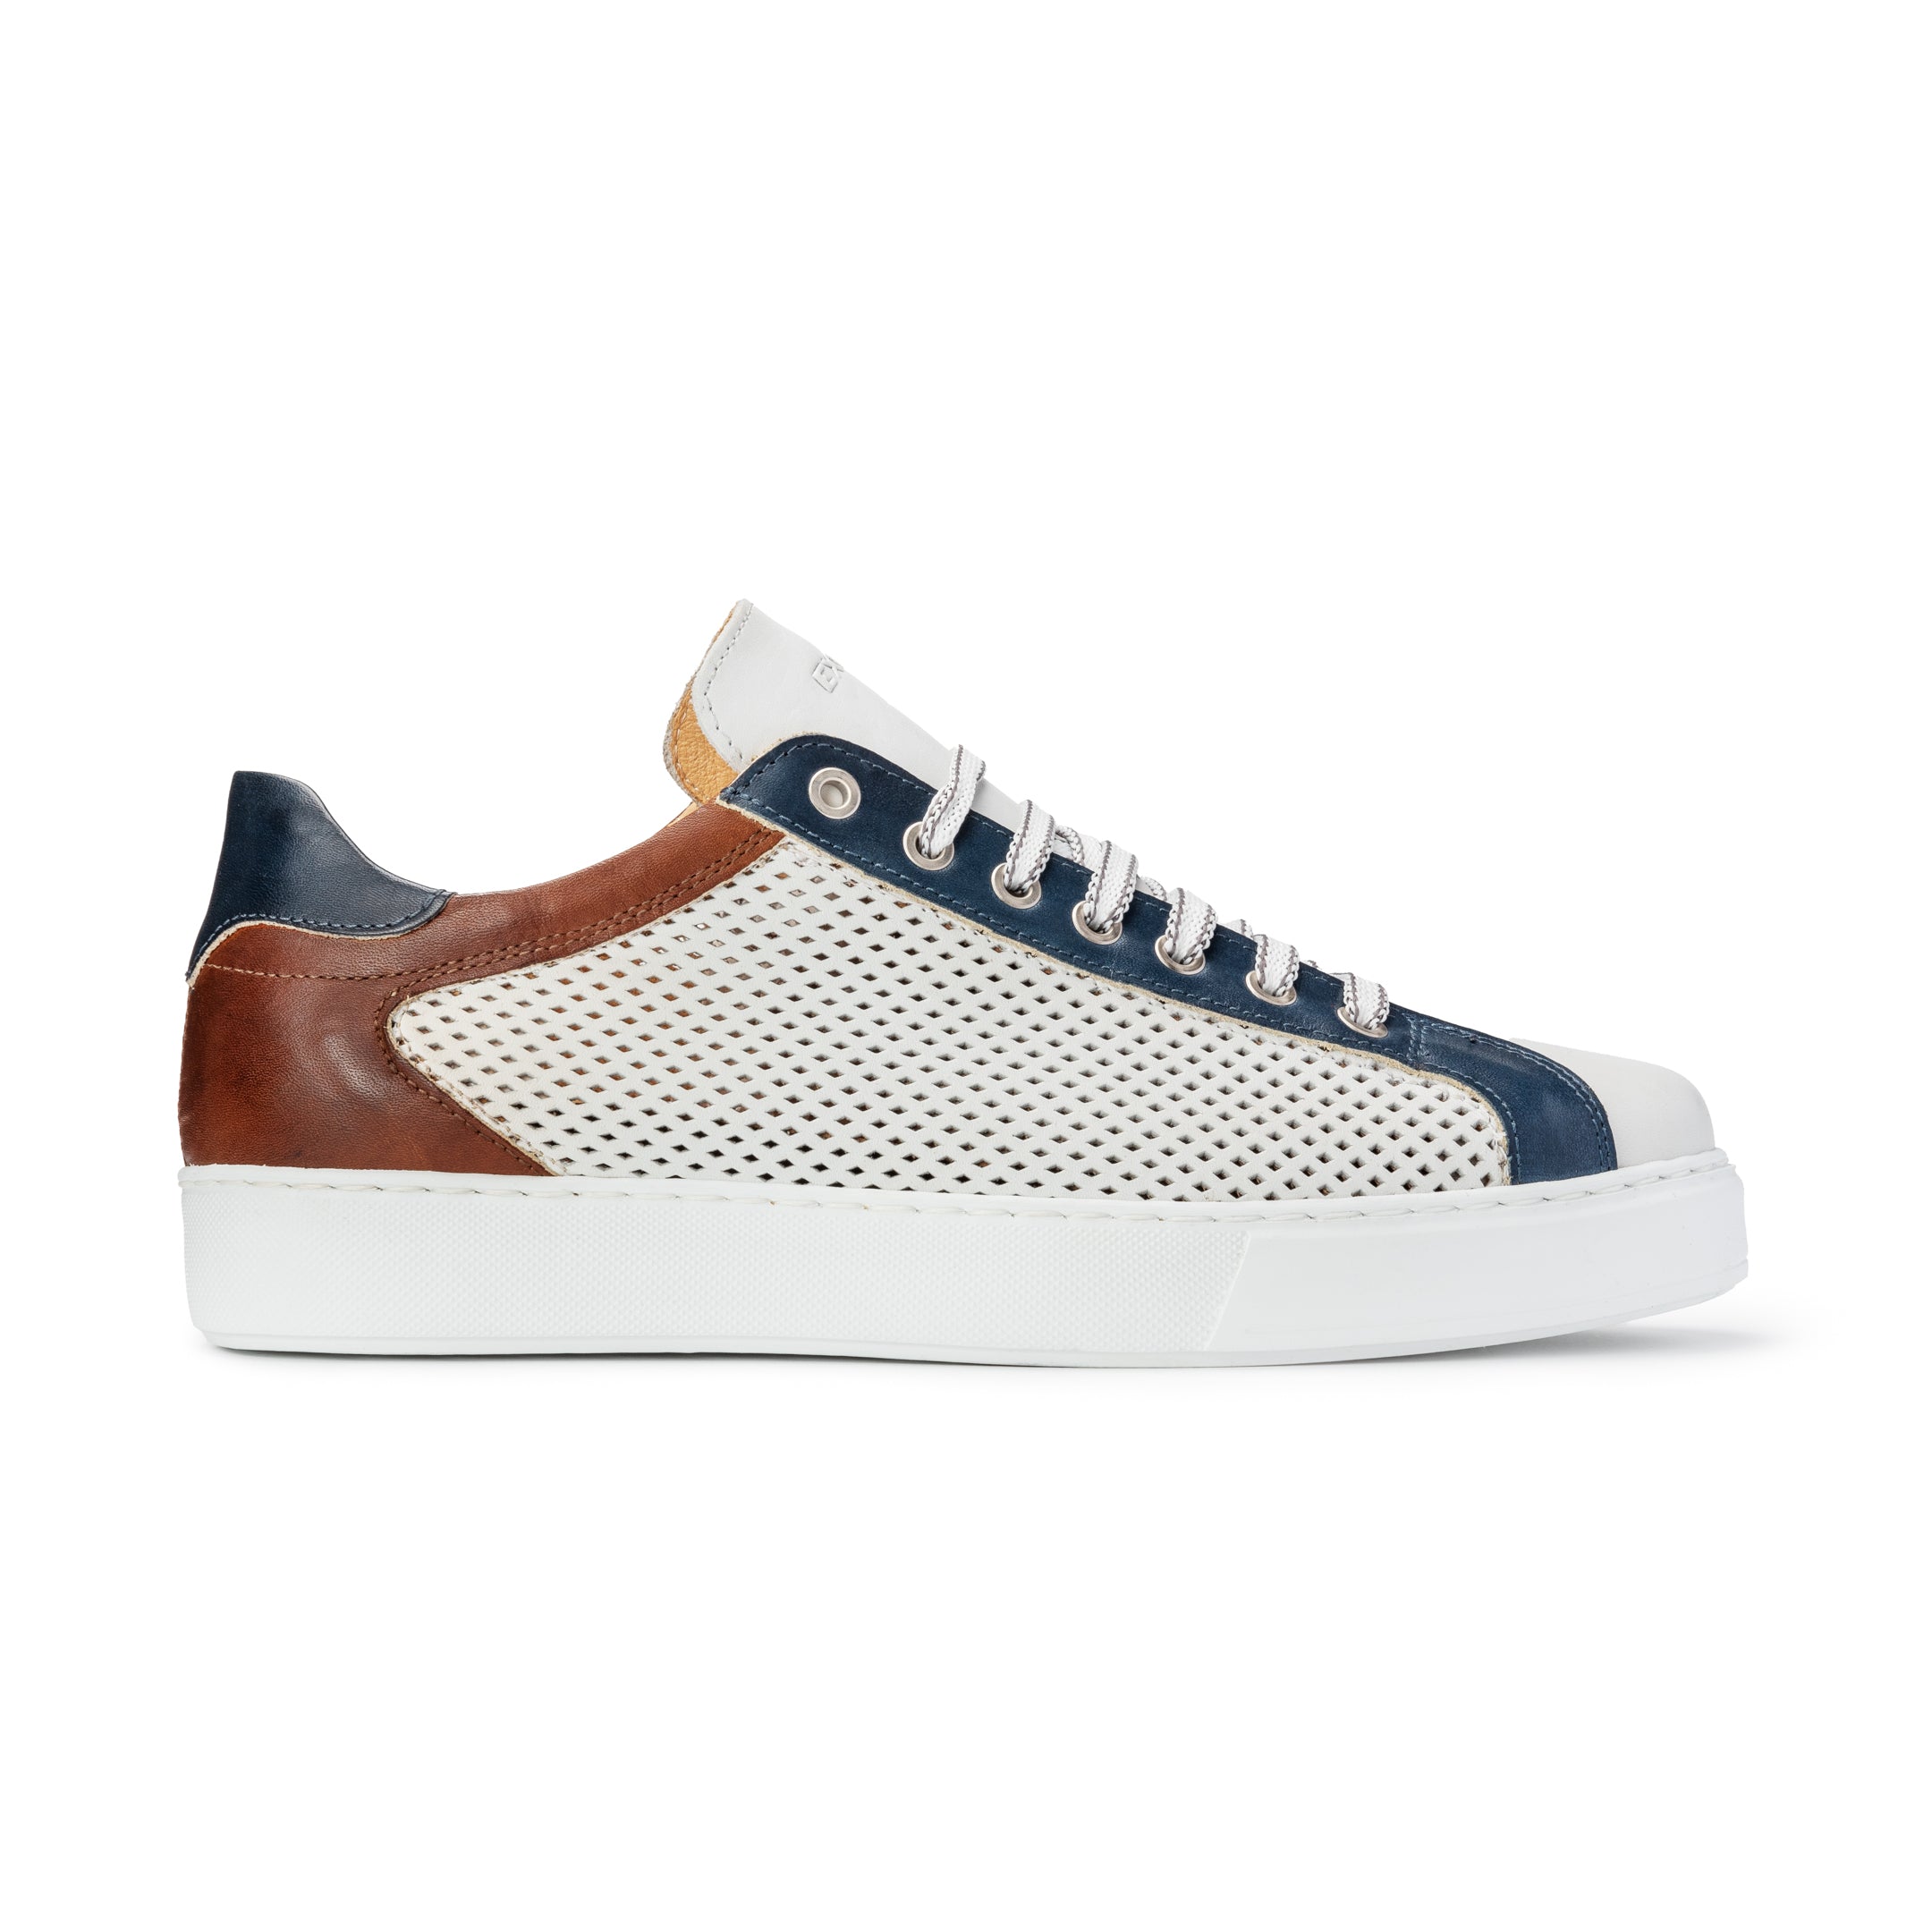 Scarpa Sneakers Uomo Bianco/Blu/Cuoio